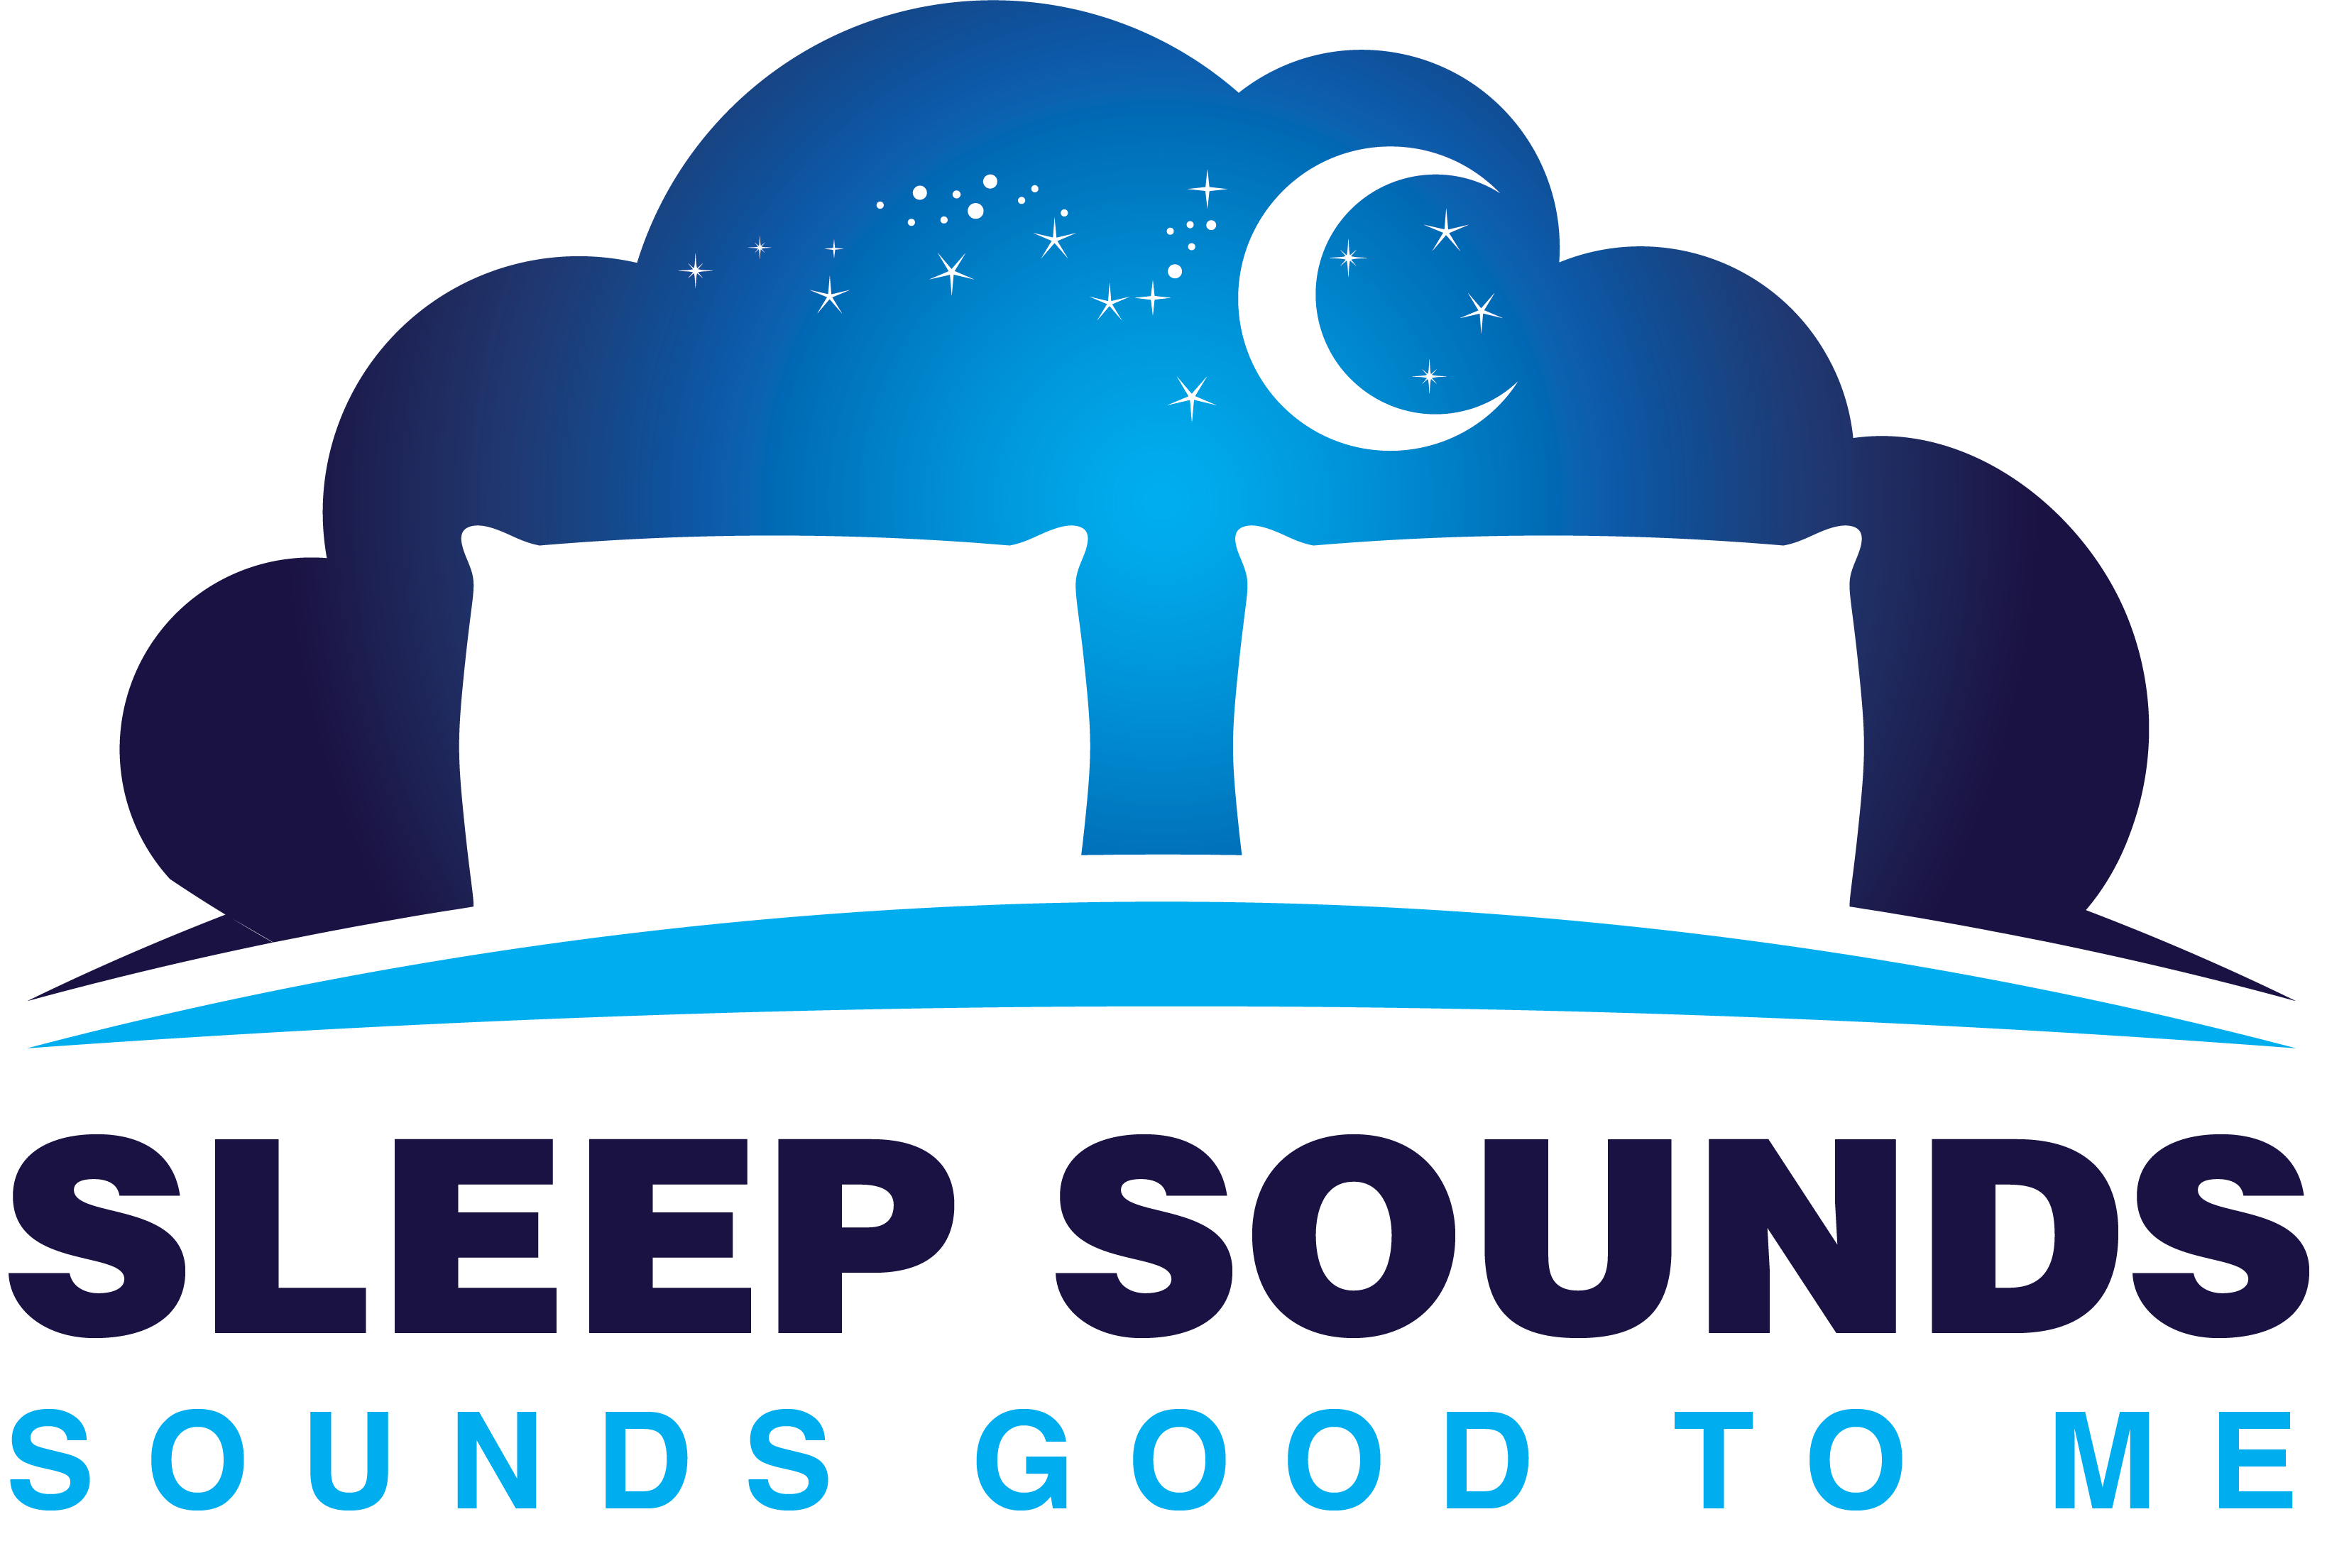 Sleep Sounds Good To Me